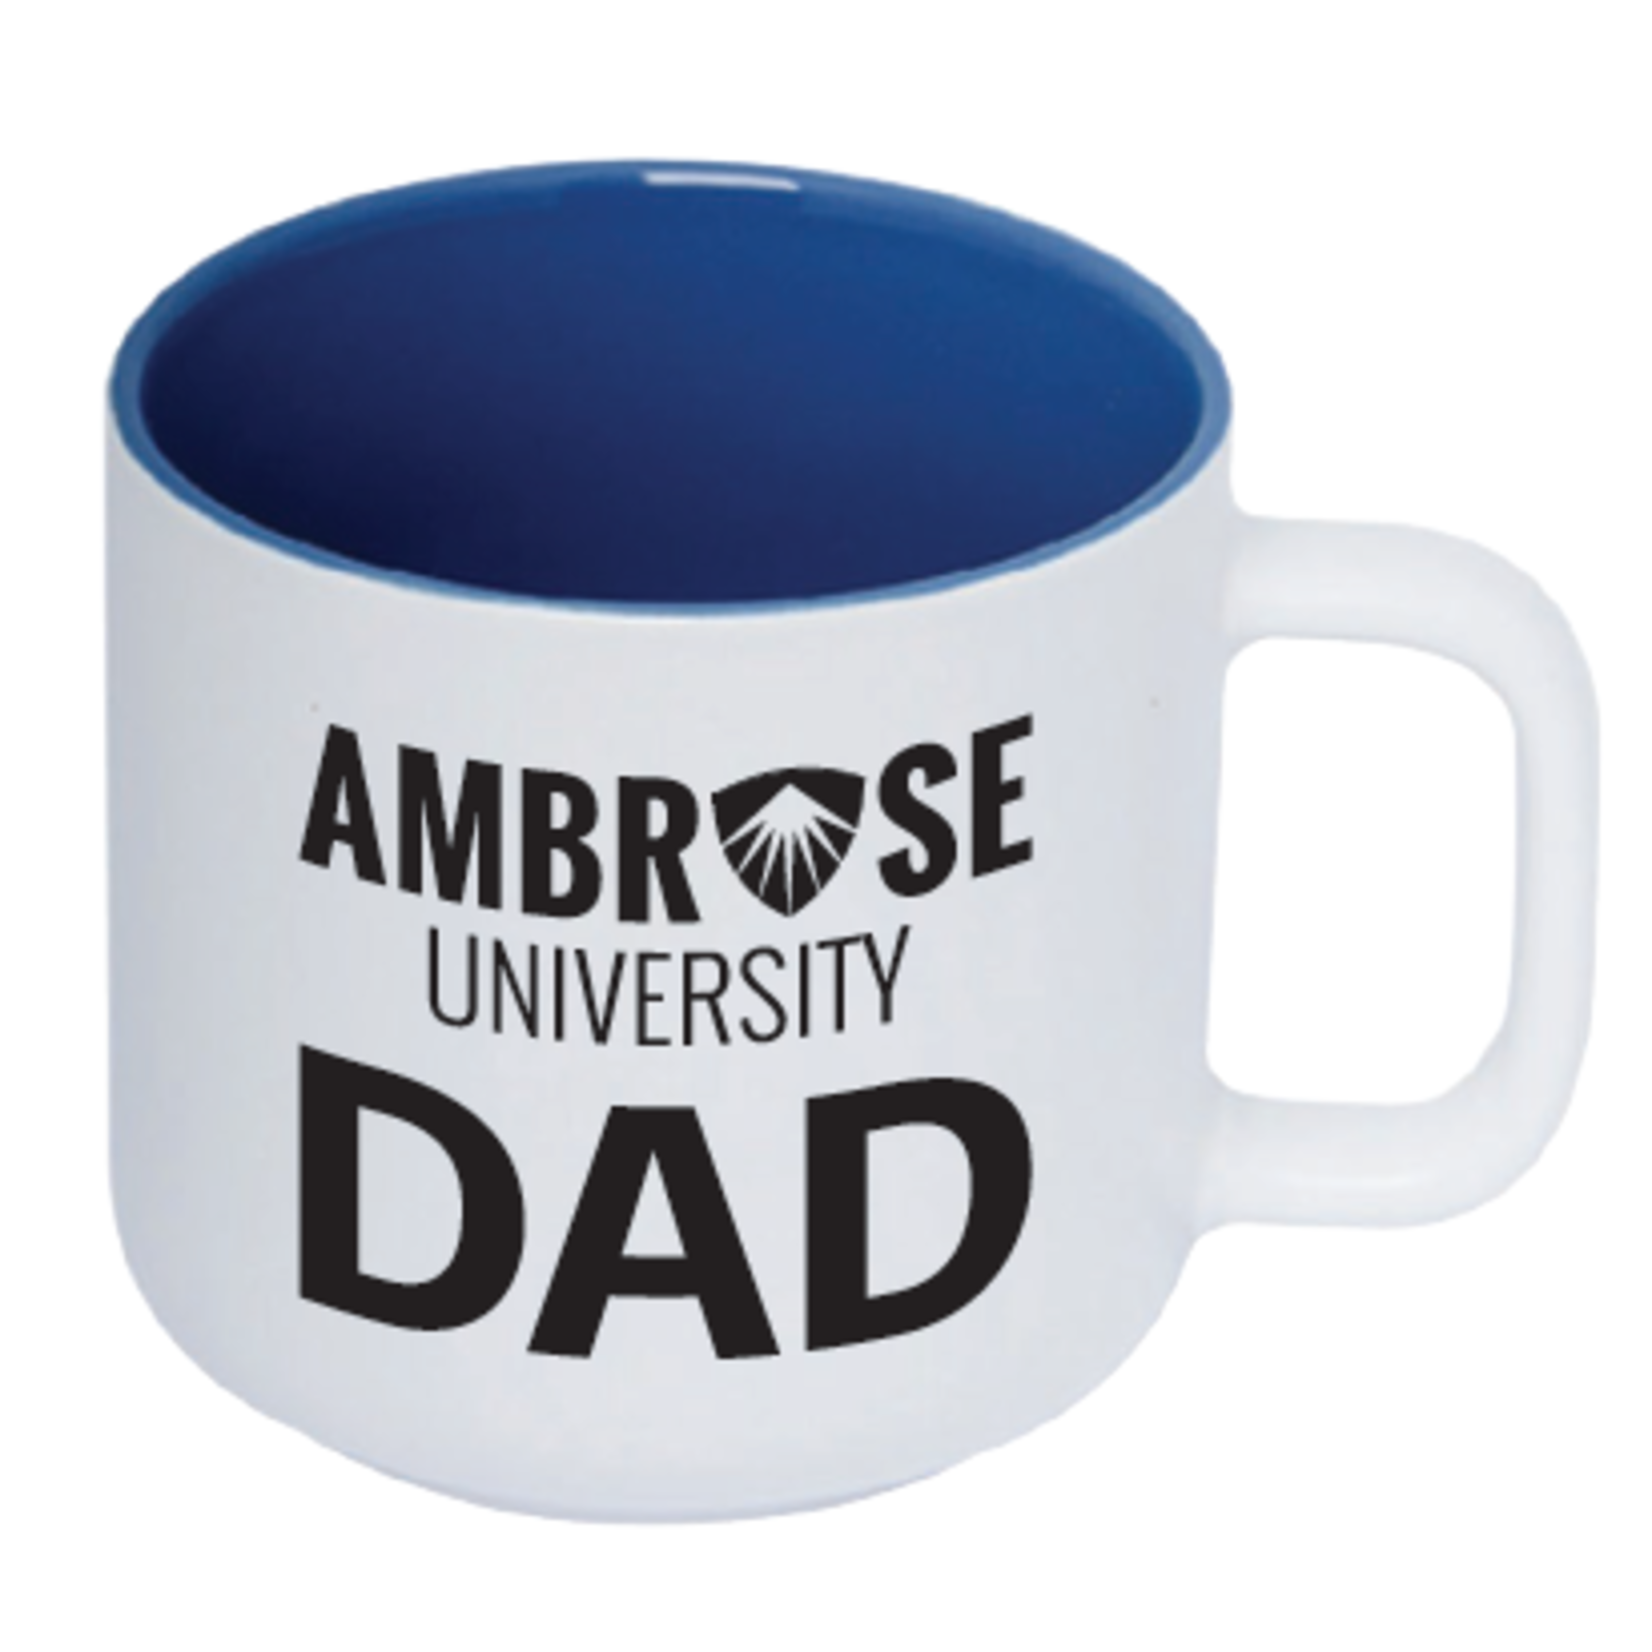 Ambrose Dad Mug